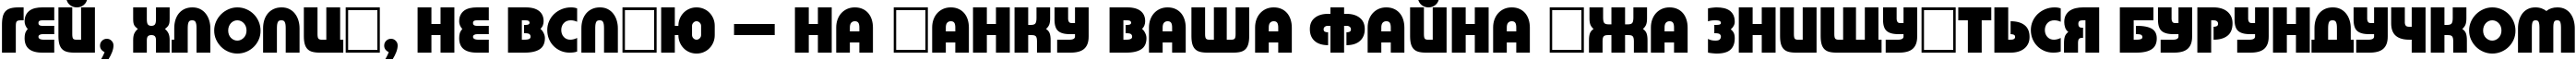 Пример написания шрифтом a_BighausTitul ExtraBold текста на украинском